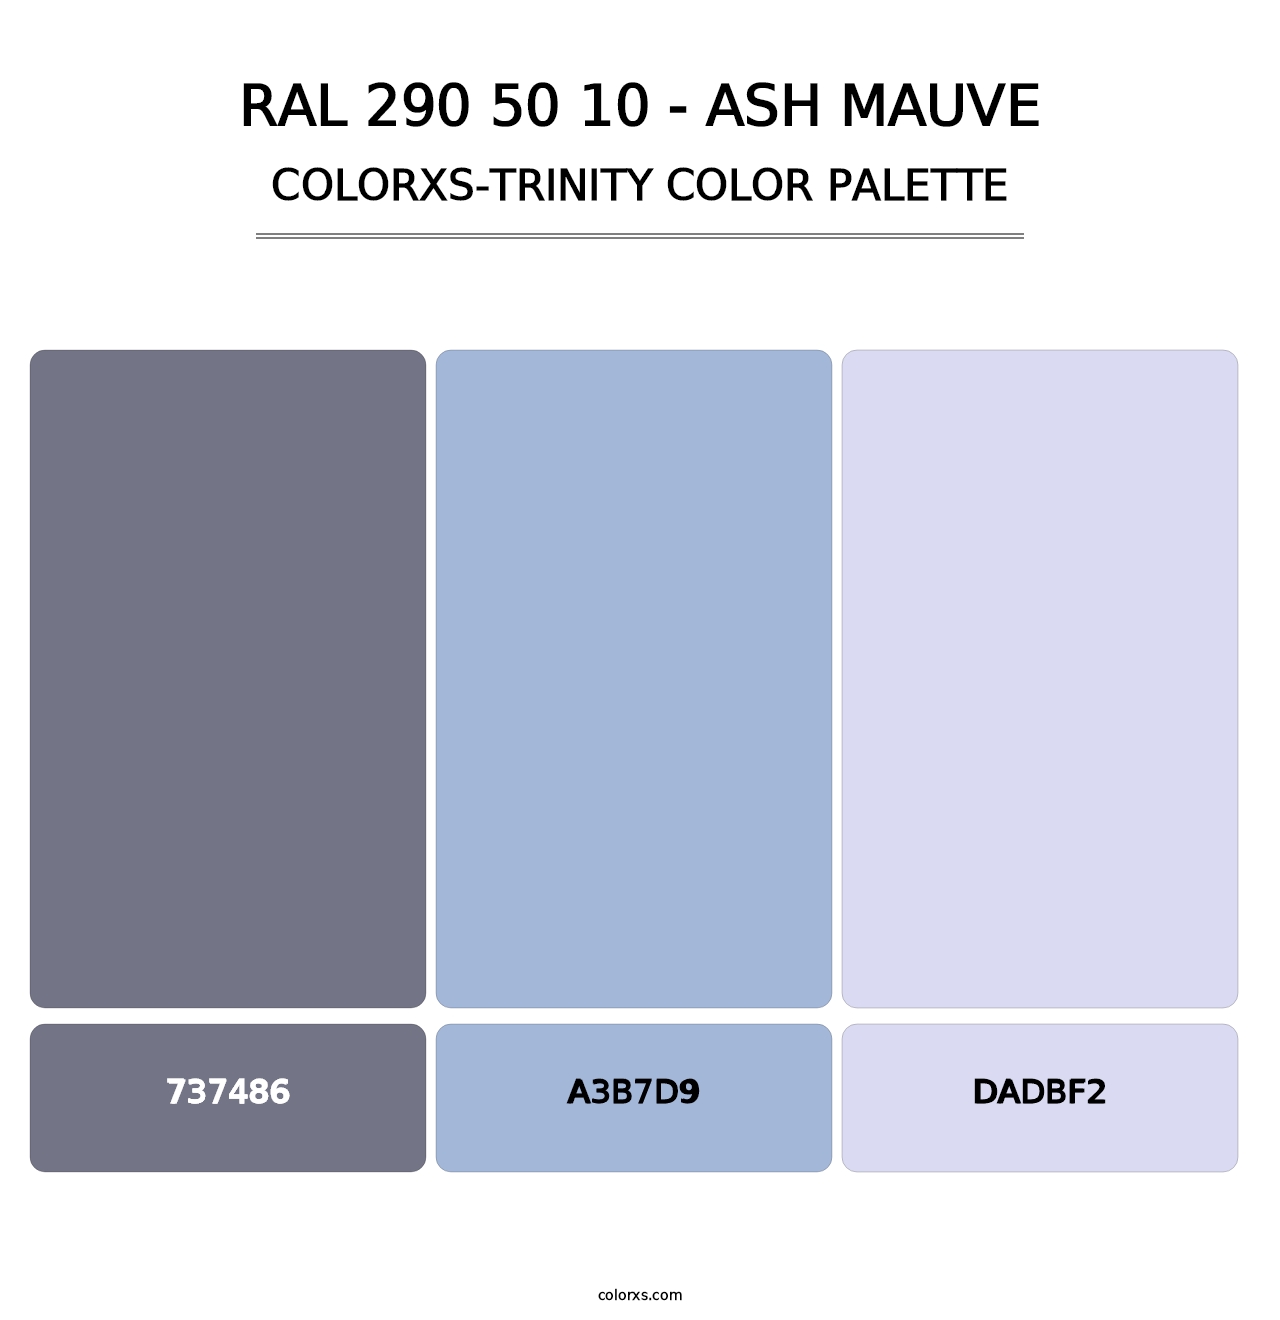 RAL 290 50 10 - Ash Mauve - Colorxs Trinity Palette